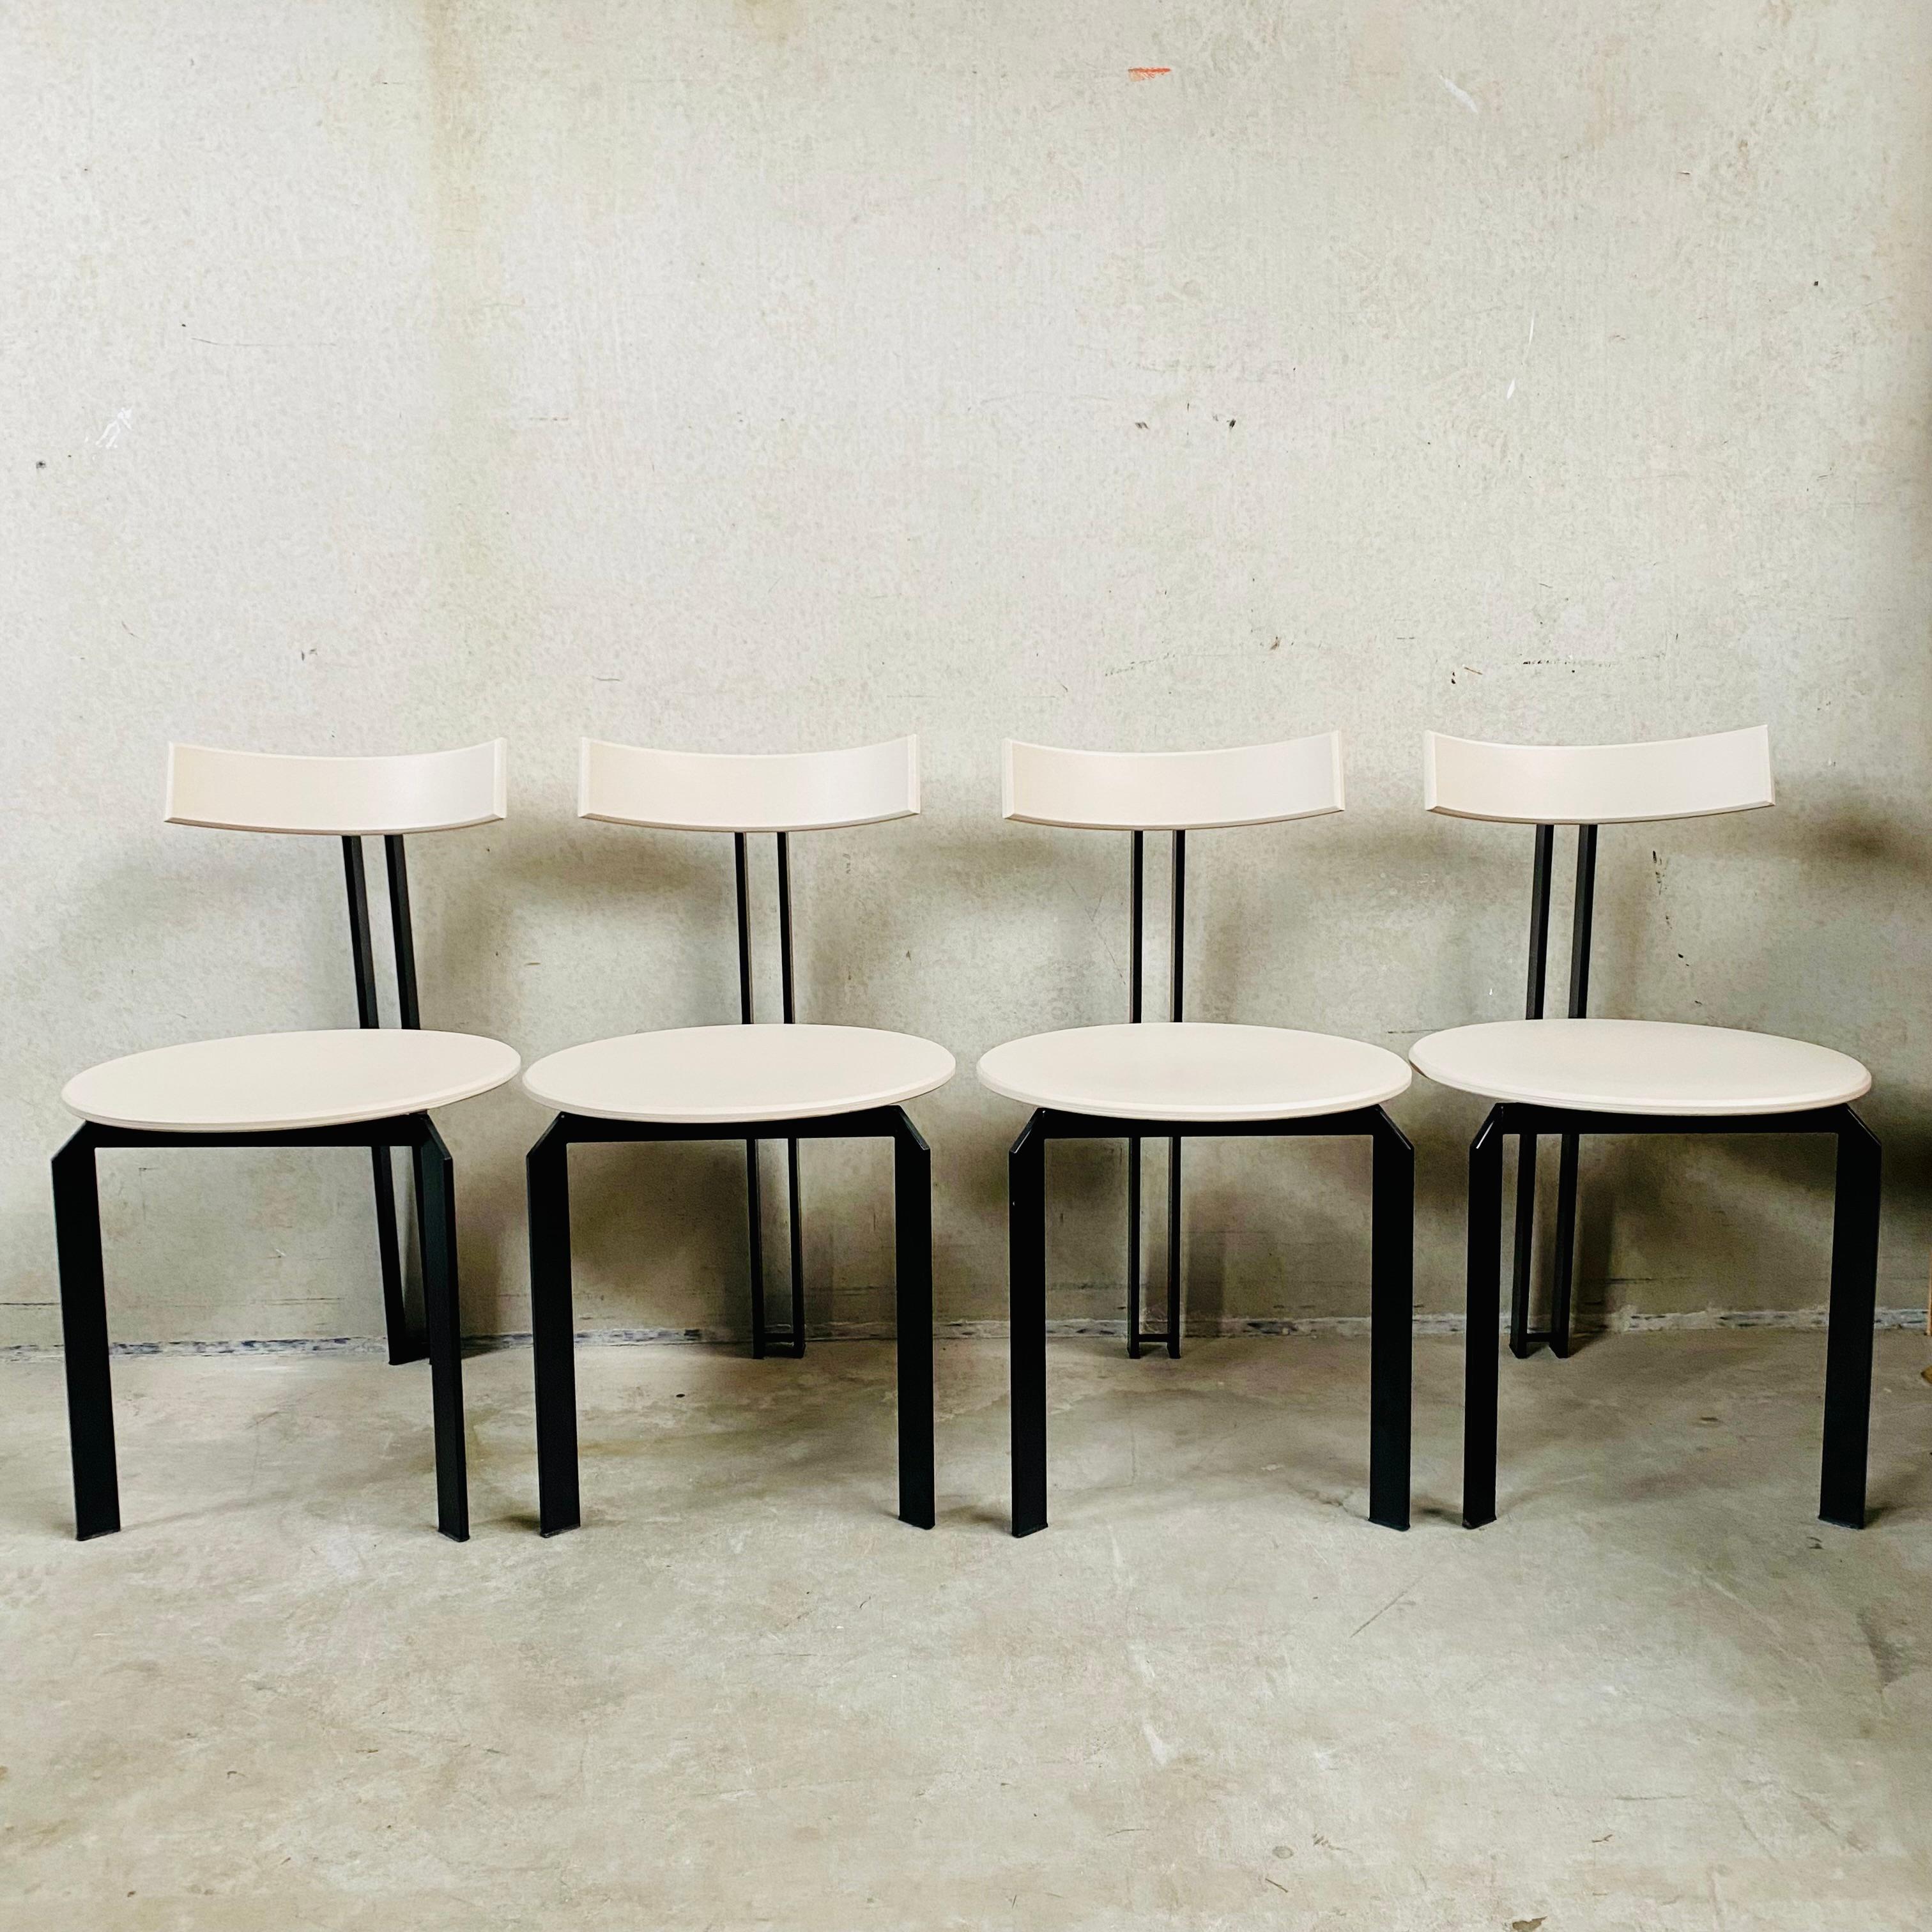 Wir stellen die ZETA Dining Chairs von Martin Haksteen für Harvink vor - ein Set von 4 Meisterwerken aus der Mitte des Jahrhunderts, die sorgfältig mit hochwertigem Möbellack in dem raffinierten Farbton Sandstone neu lackiert wurden. Diese Stühle